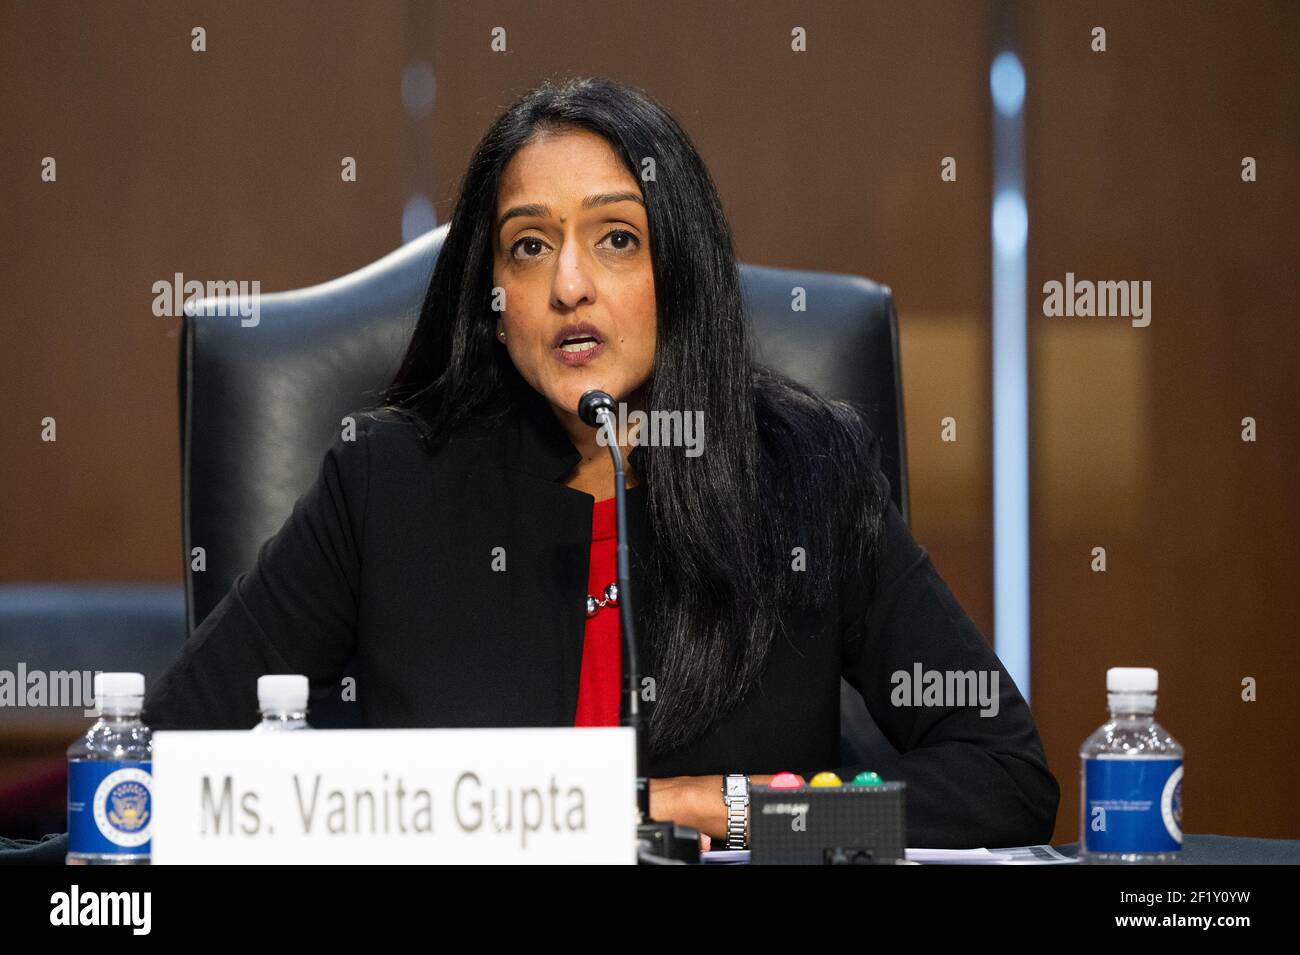 Washington, États-Unis. 09e mars 2021. Vanita Gupta, prête à être nommée procureur général adjoint du ministère de la Justice, prenant la parole à l'audience du Comité judiciaire du Sénat au Capitole des États-Unis. Crédit : SOPA Images Limited/Alamy Live News Banque D'Images